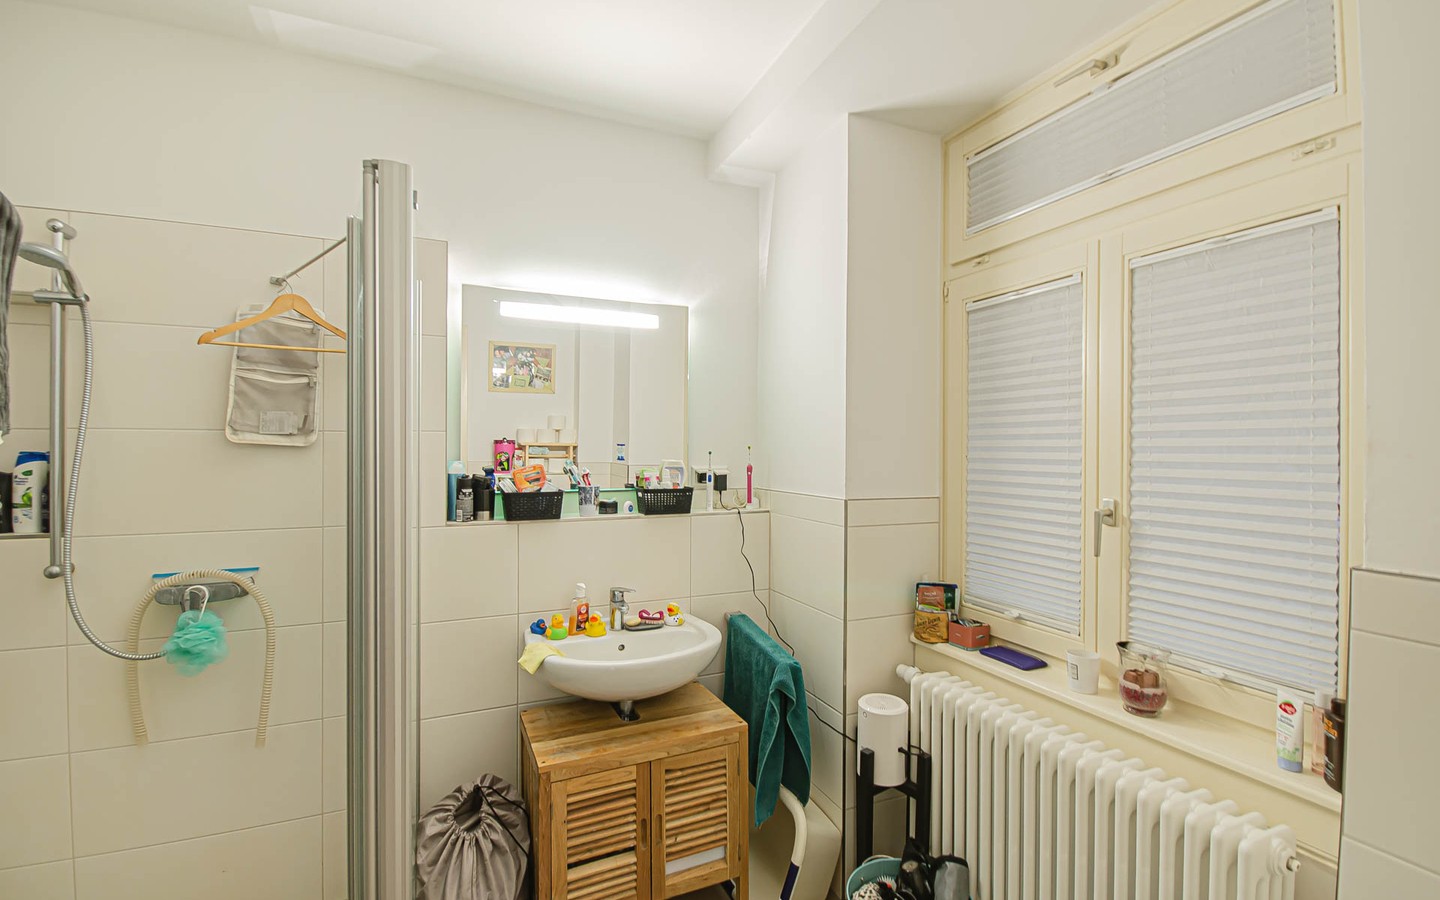 Badezimmer - Mittendrin und dennoch ruhig:
Sanierte Altbauwohnung mit Gartenanteil für Singles mit grünem Daumen